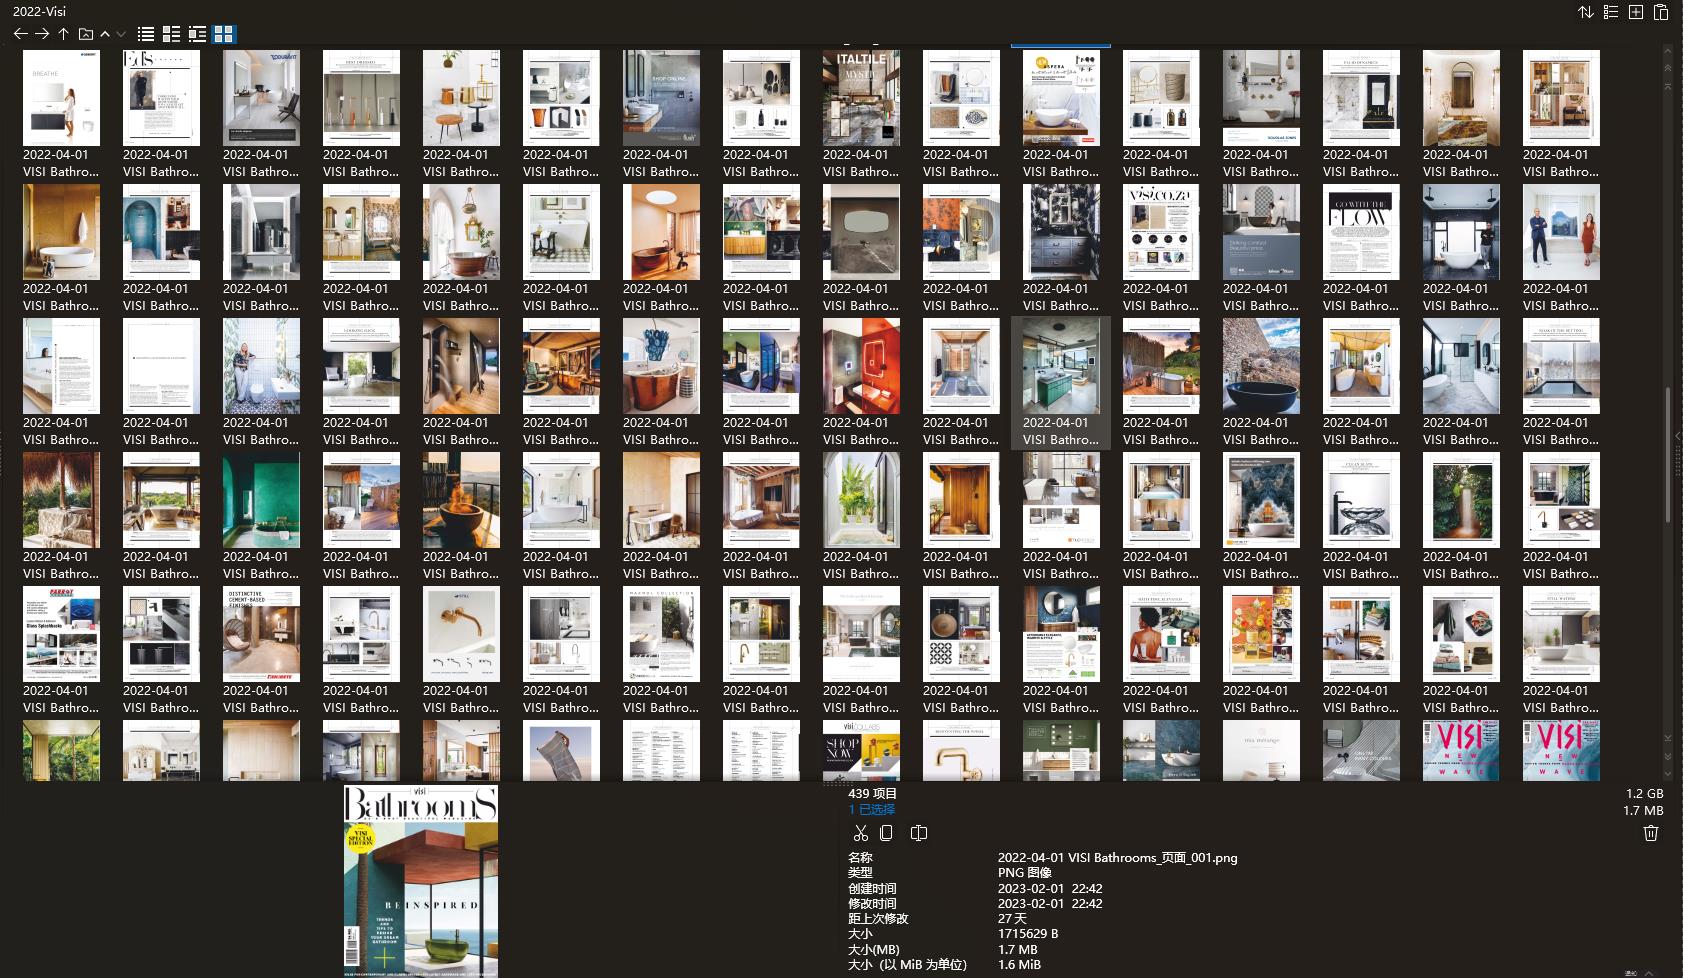 室內設計雜誌VISI,別墅設計雜誌,室內設計電子雜誌,雜誌下載,VISI雜誌合集